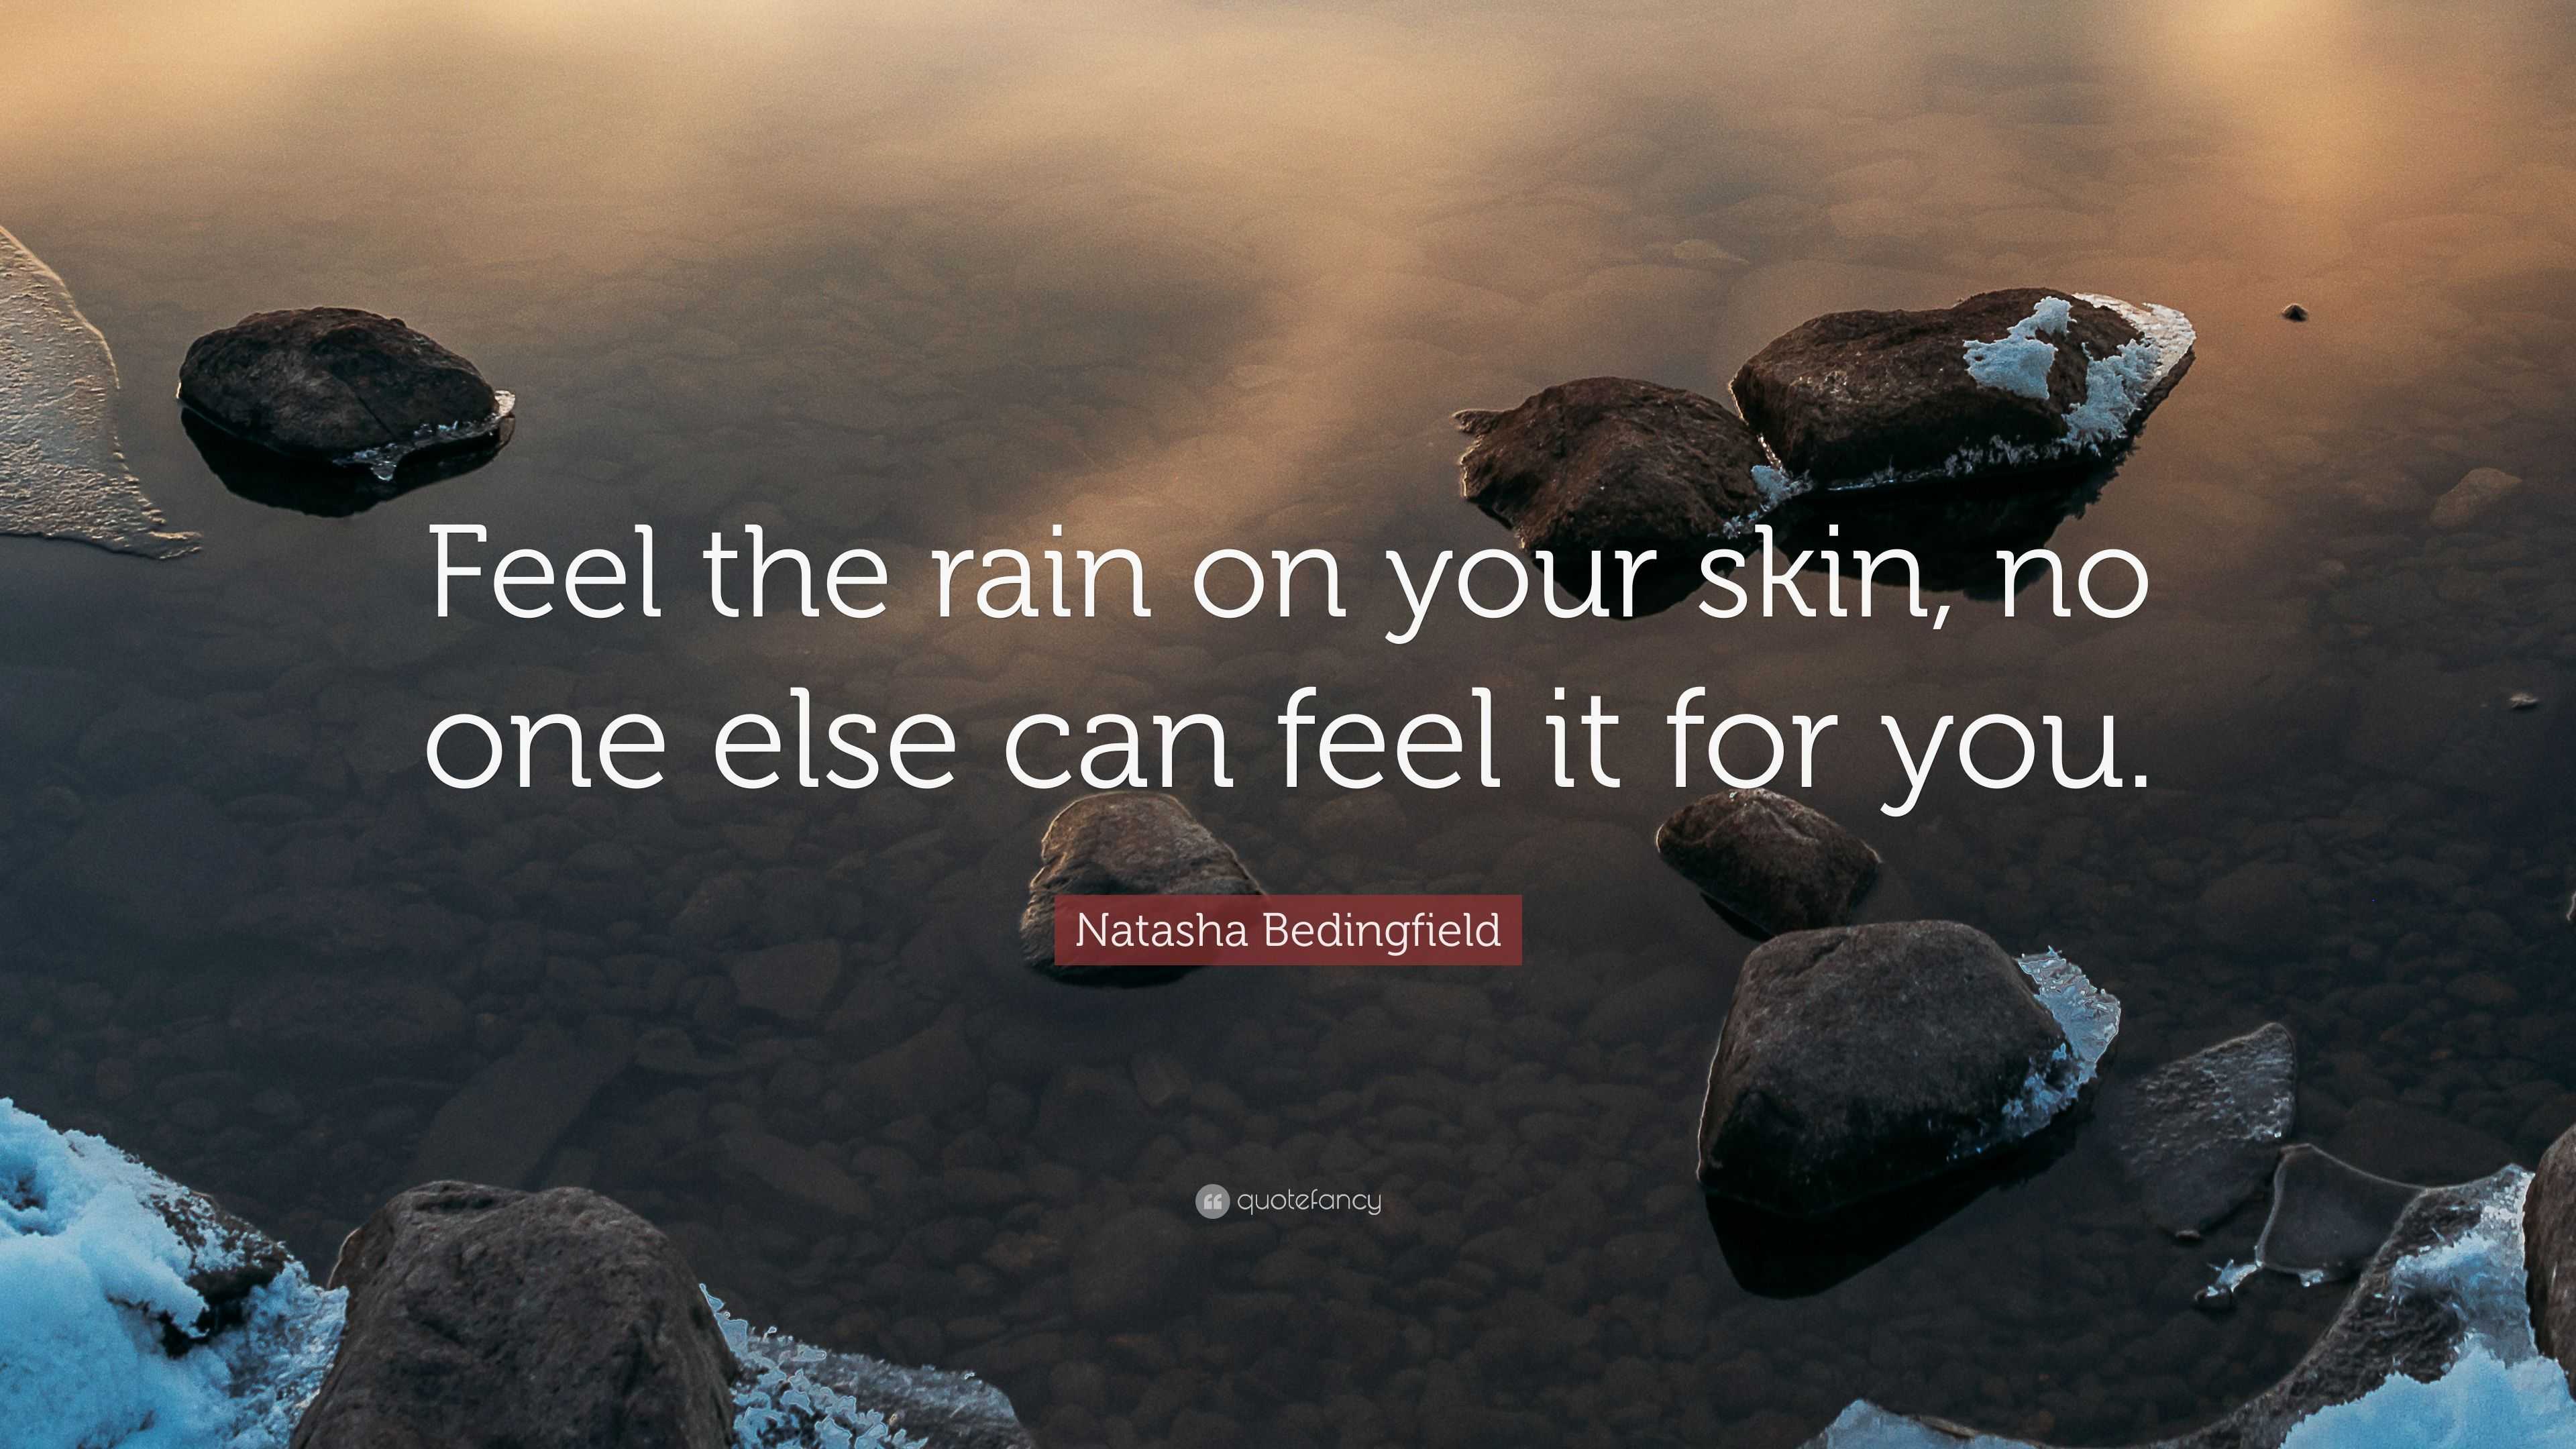 Natasha Bedingfield Quote: "Feel the rain on your skin, no ...